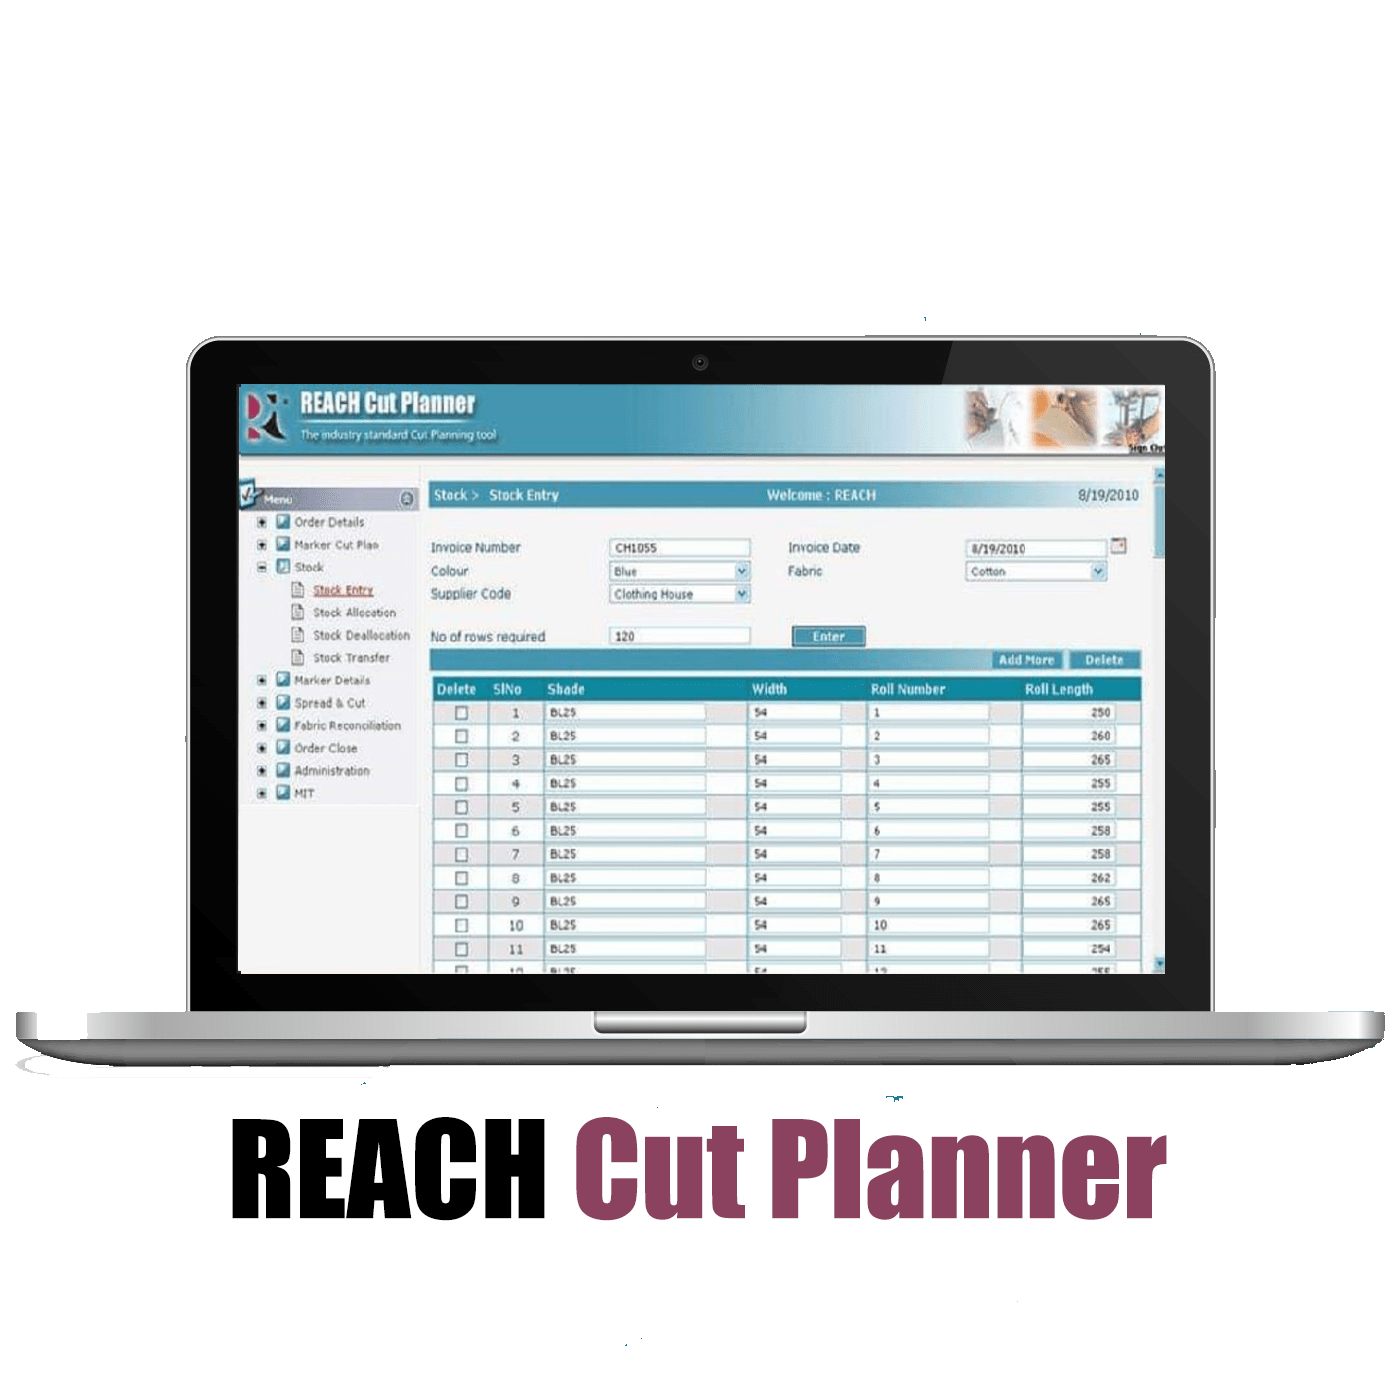 apparel-cut-planning-software-reach-cut-planner-1